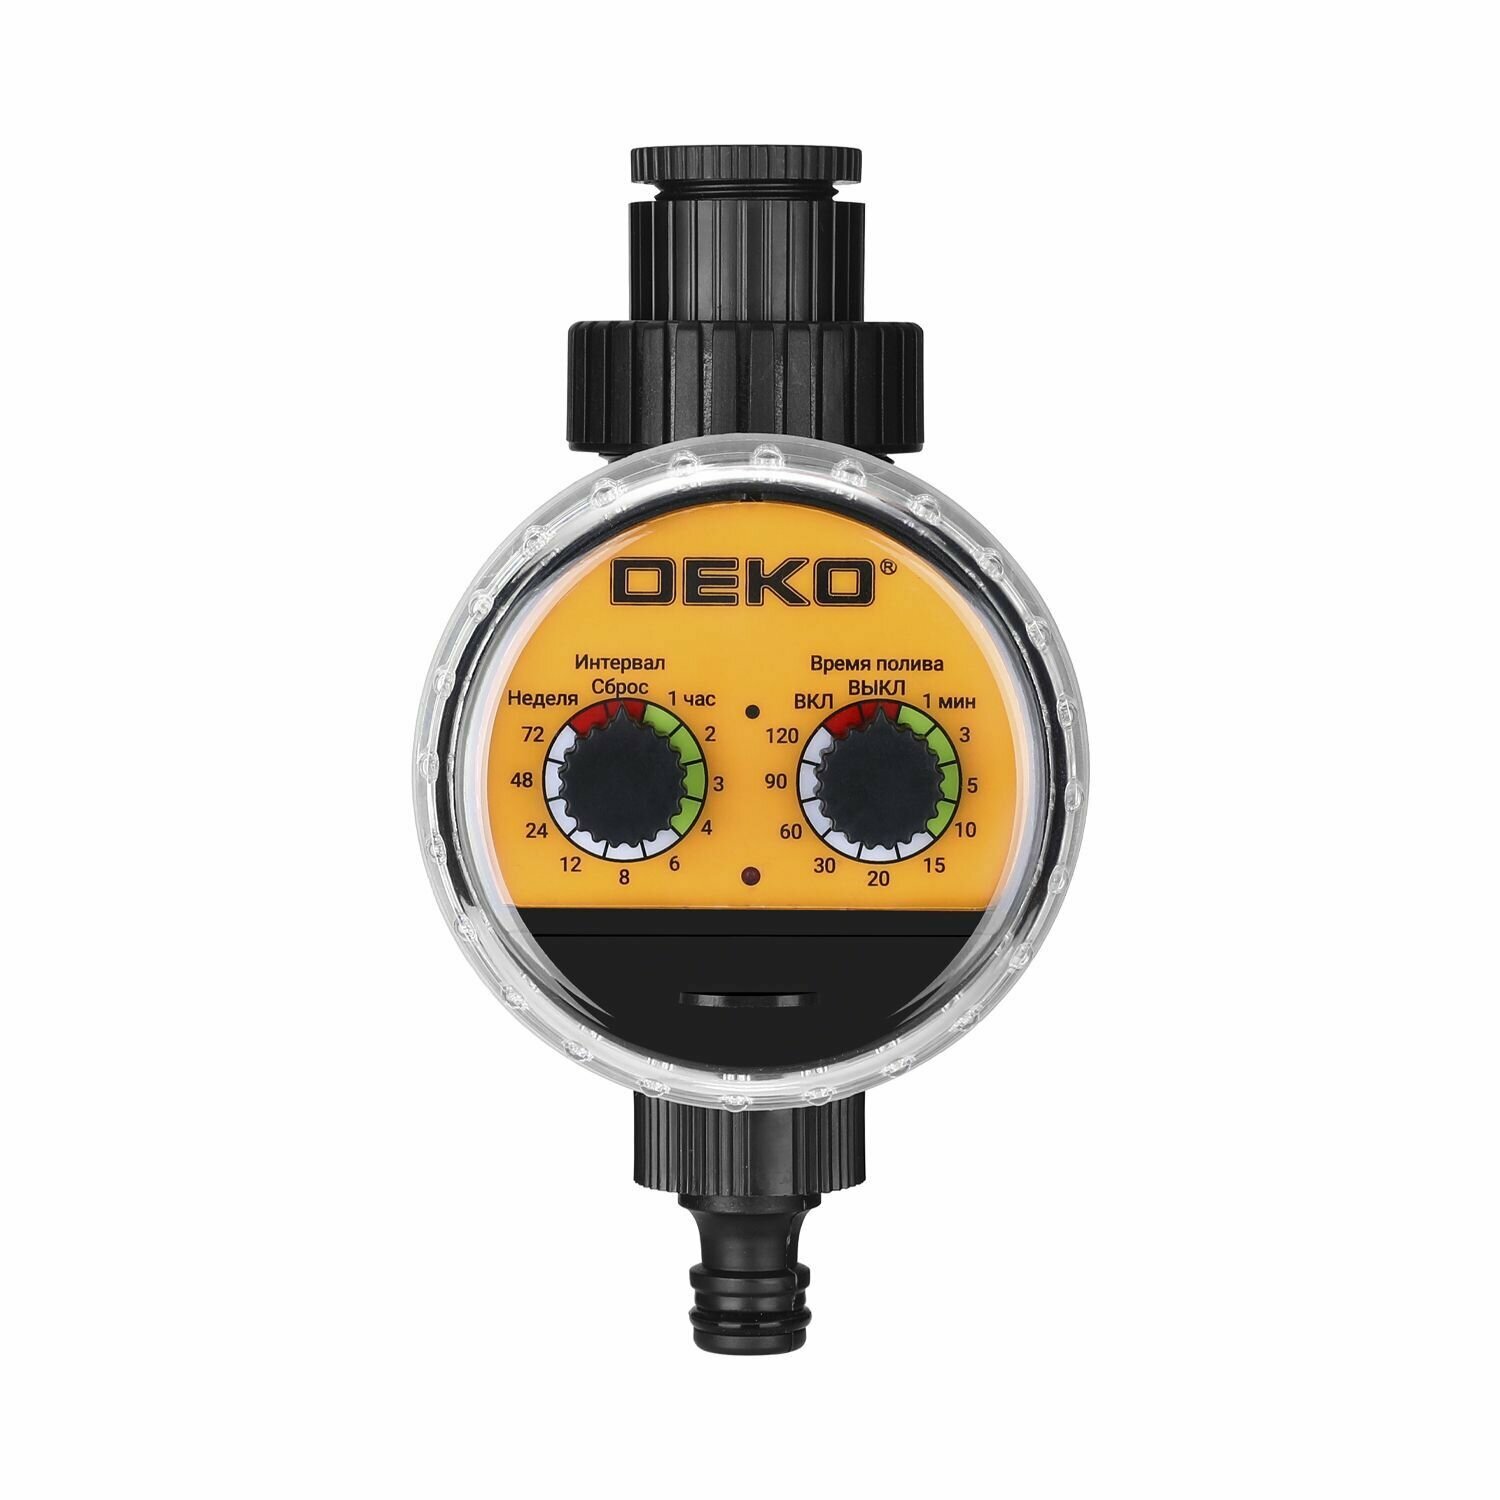 Таймер для полива электронный DEKO DKIT04 с шаровым механизмом, меню на русском языке